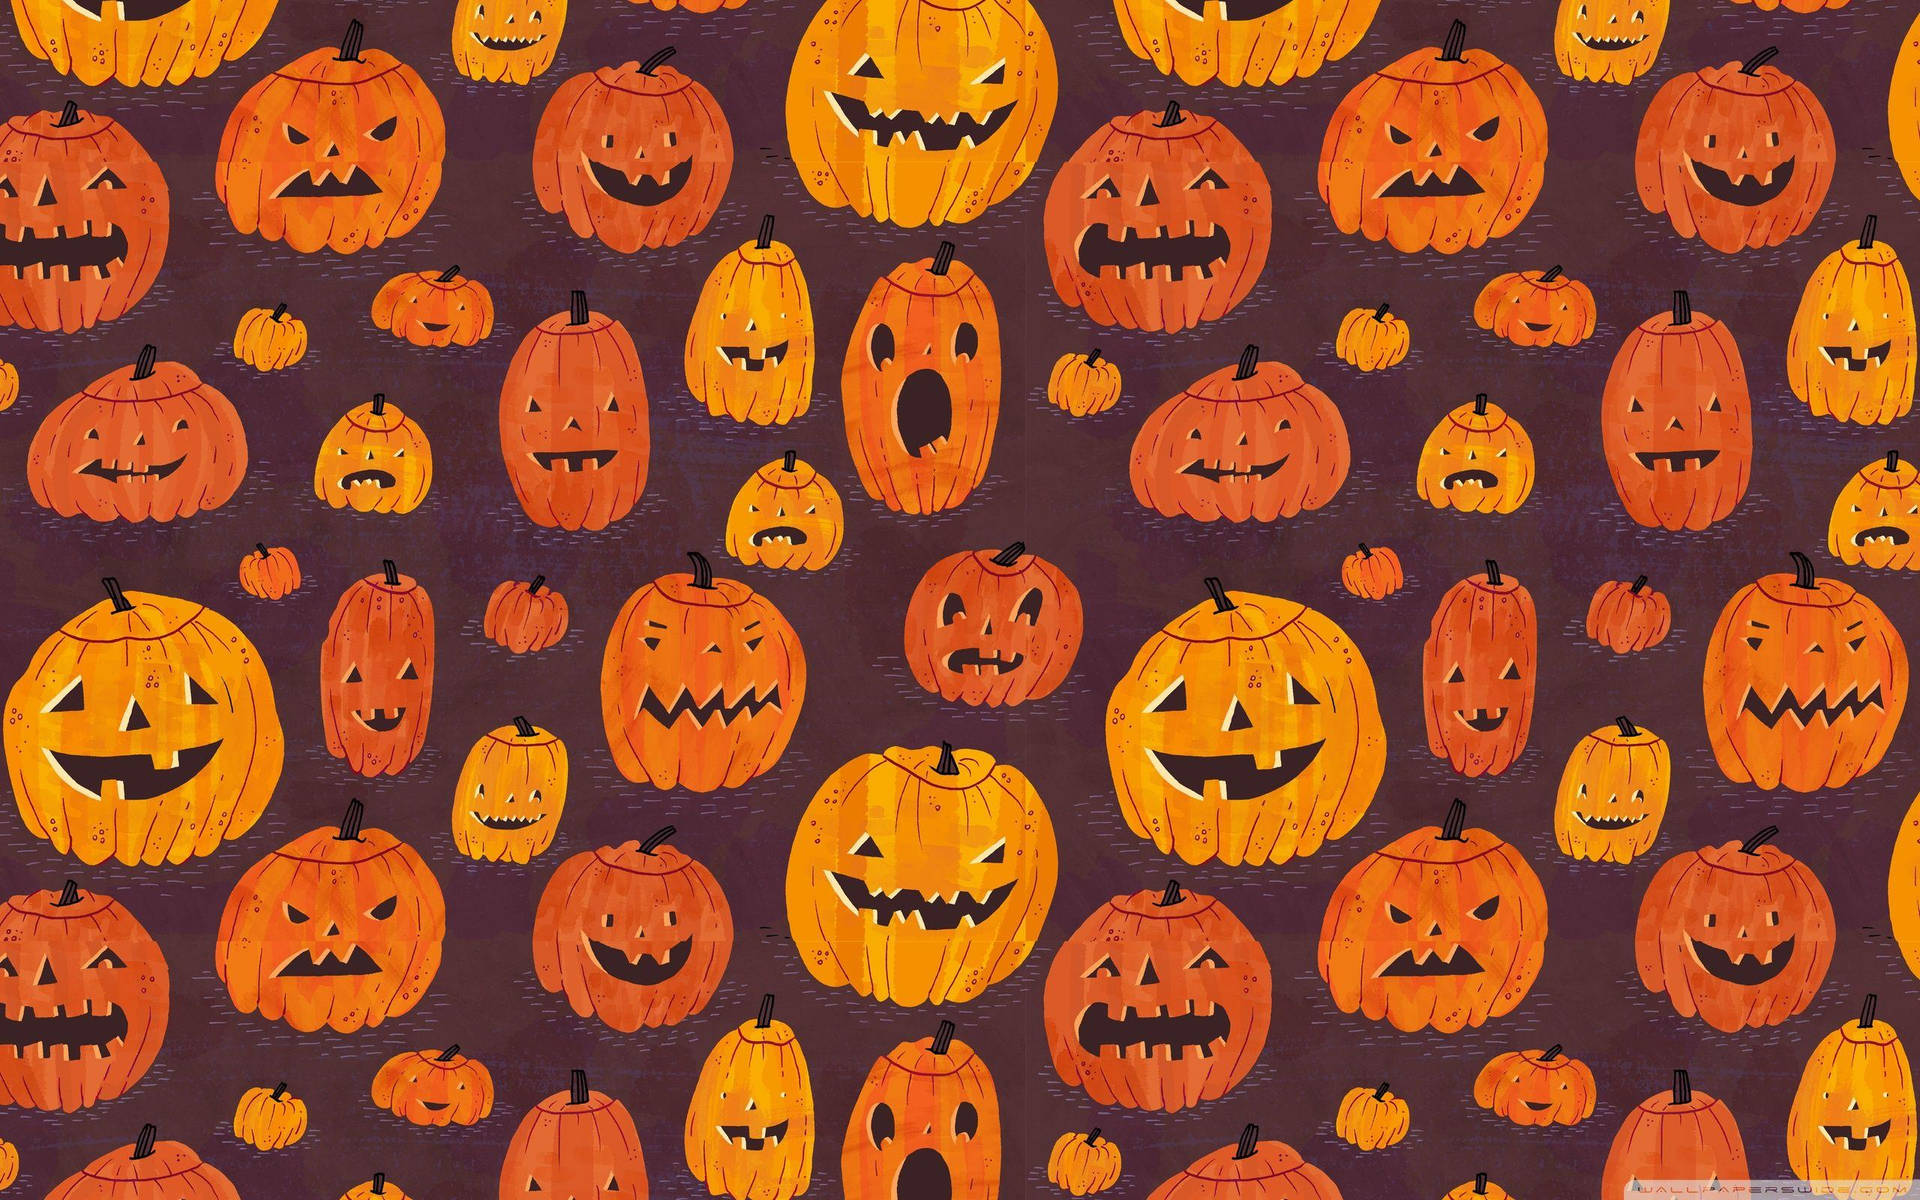 Cute Aesthetic Halloween Pumpkin Patterns Wallpaper